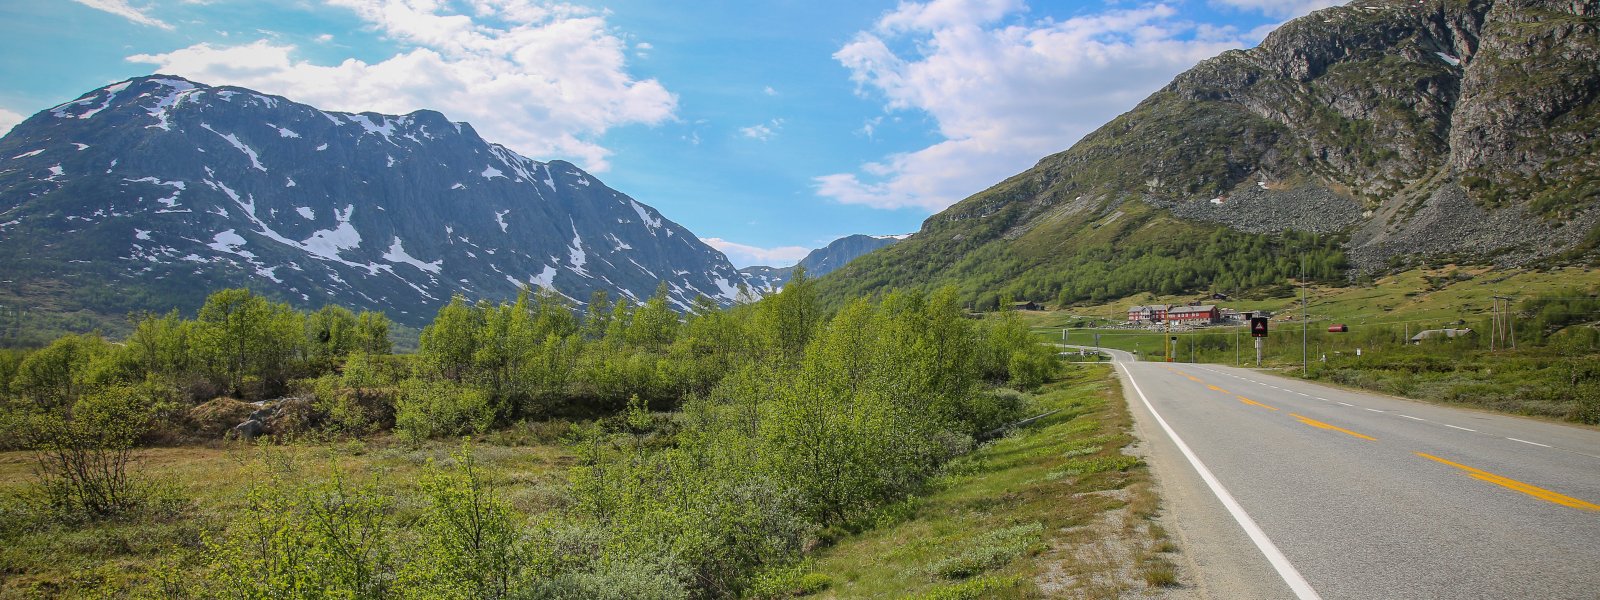 Natur-fjell-samferdsel-vei-Hemsedal-42527680752_59c09beda3_o